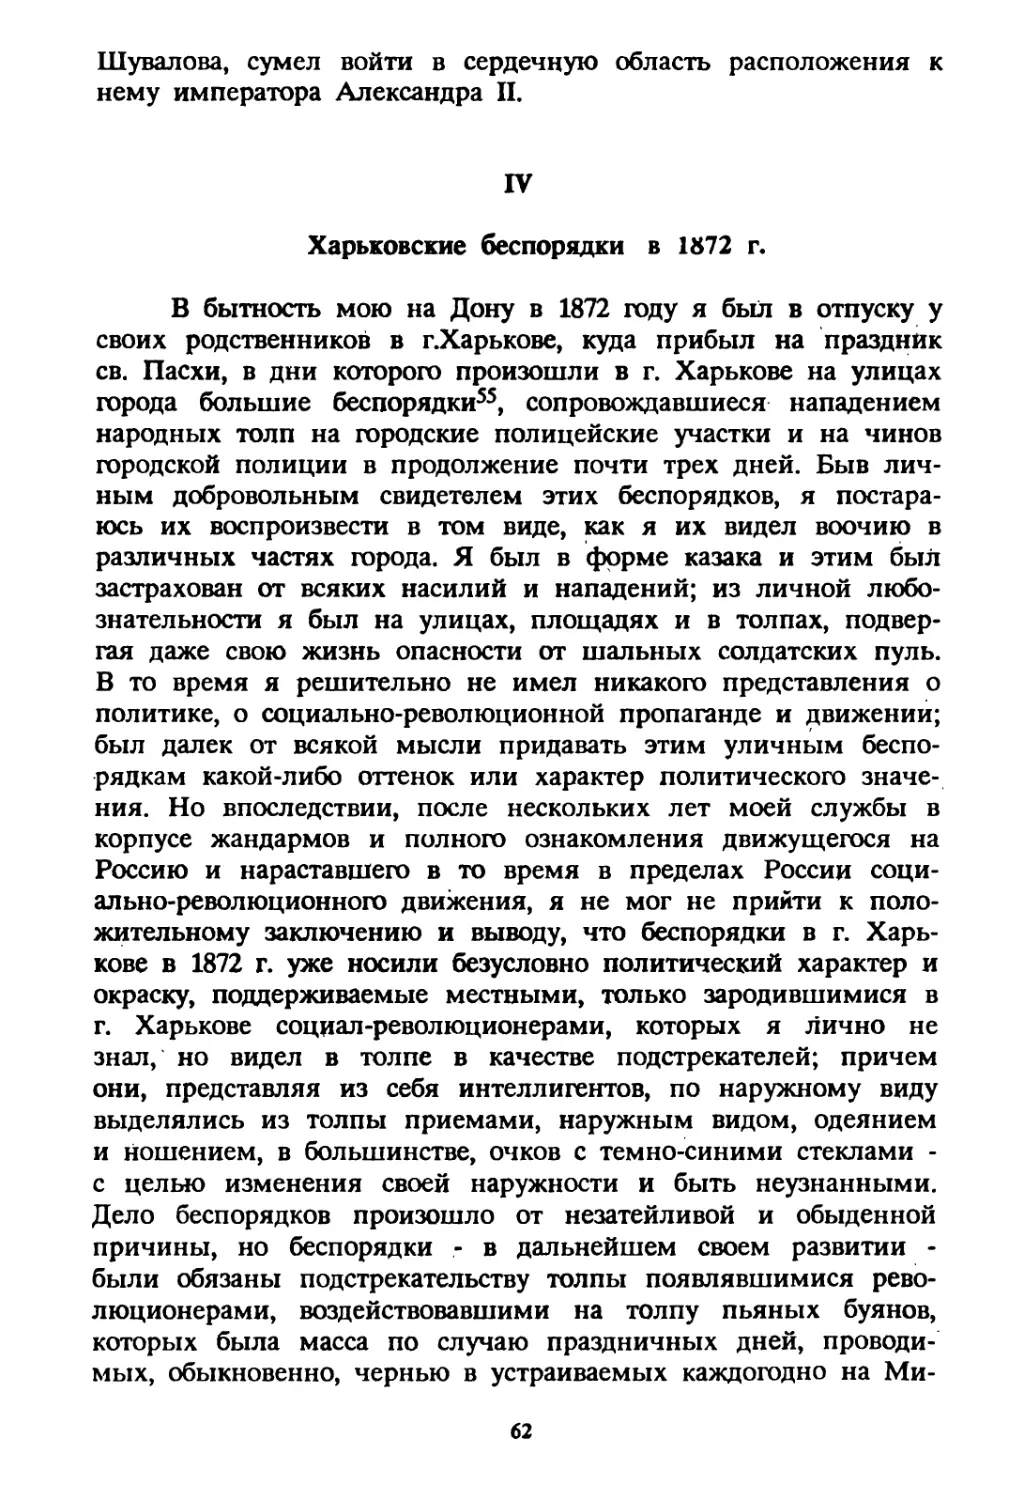 IV. Харьковские беспорядки в 1872 г.